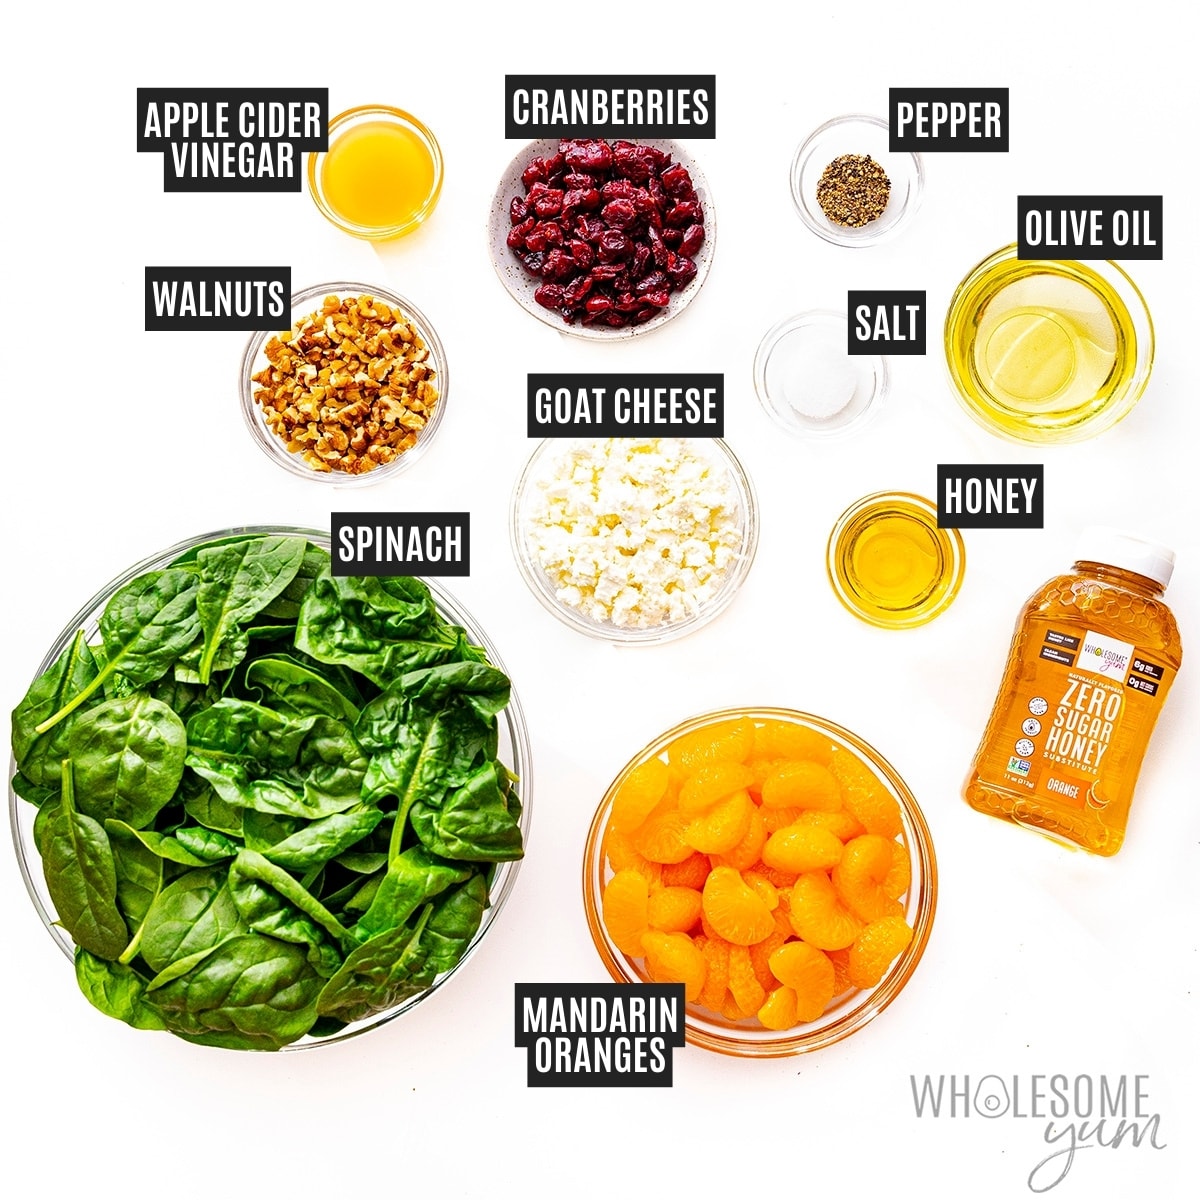 Mandarin orange salad recipe ingredients.